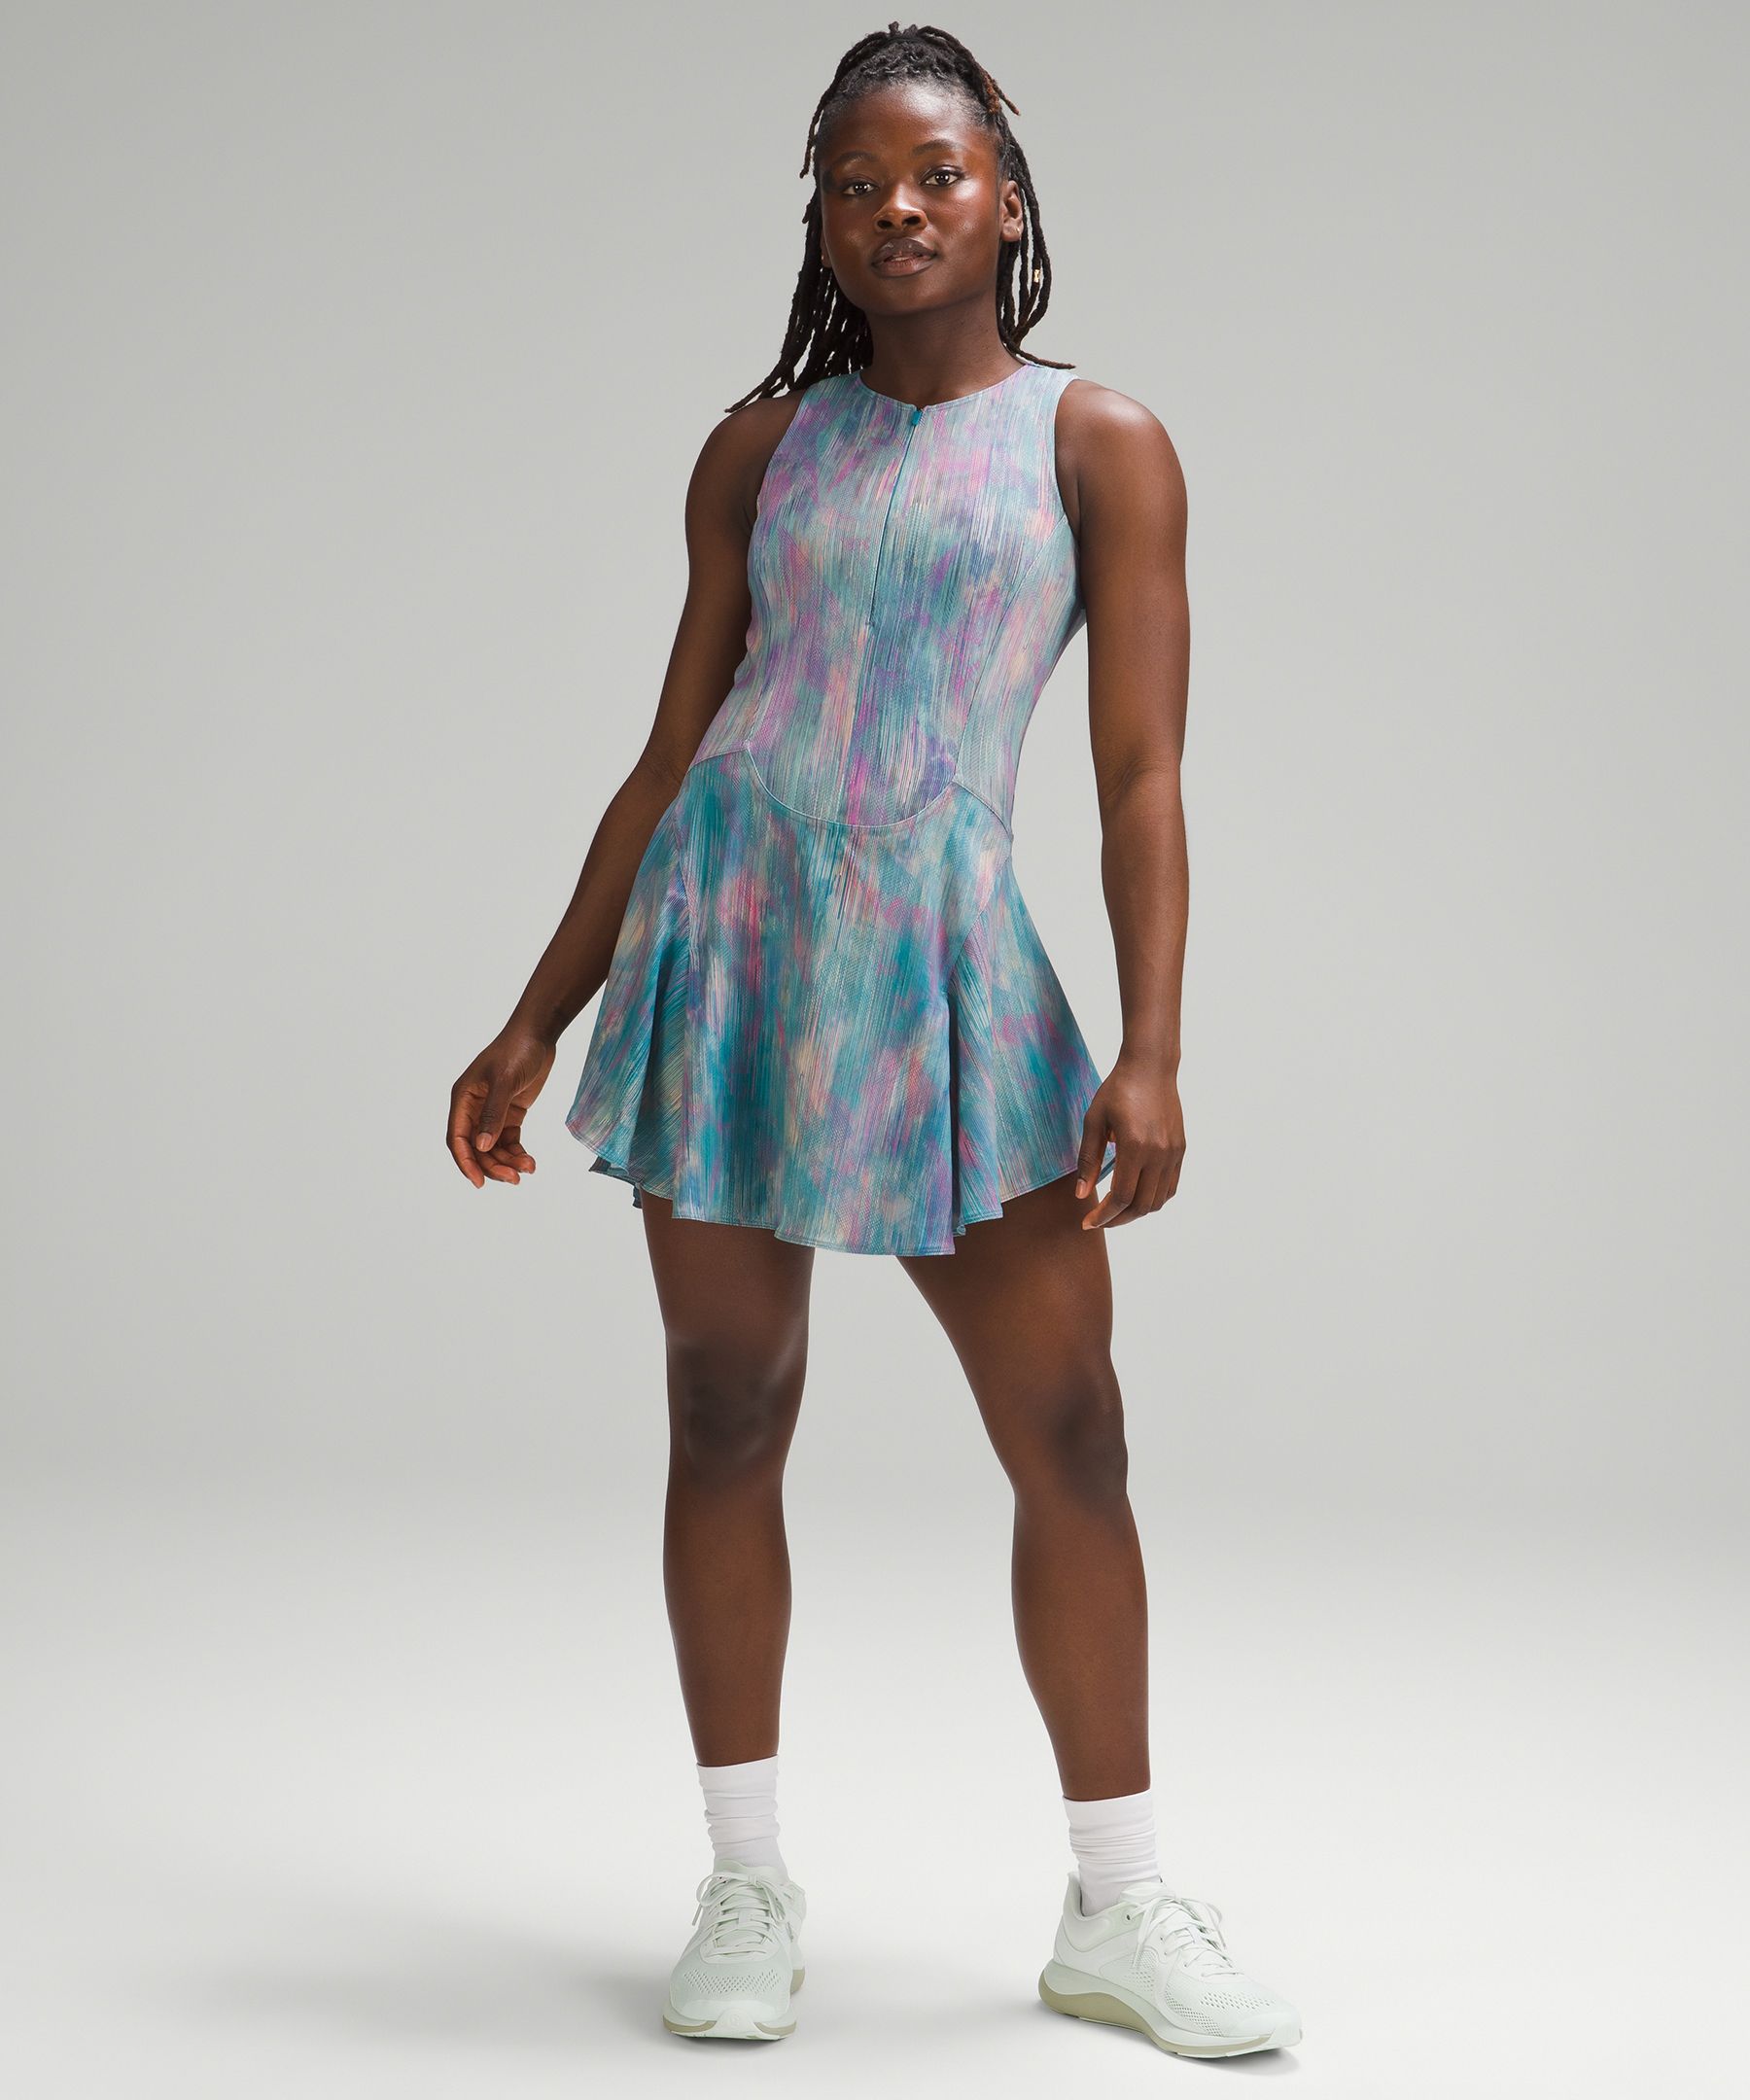 Lululemon Everlux Short-lined Tennis Tank Top Dress 6